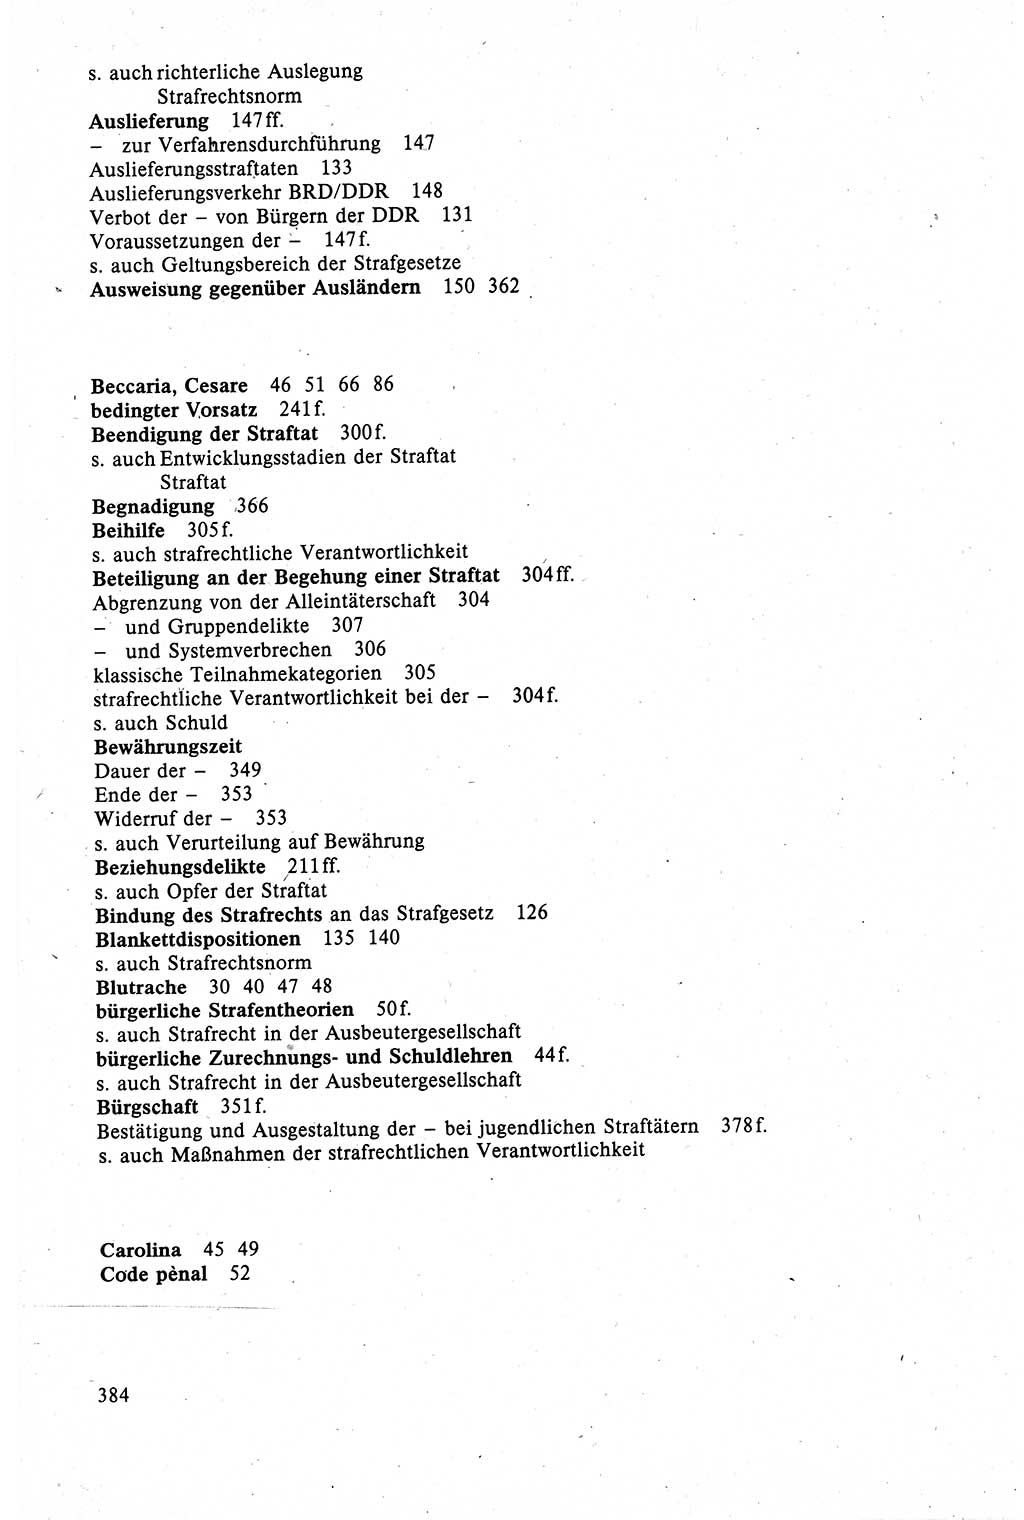 Strafrecht der DDR (Deutsche Demokratische Republik), Lehrbuch 1988, Seite 384 (Strafr. DDR Lb. 1988, S. 384)